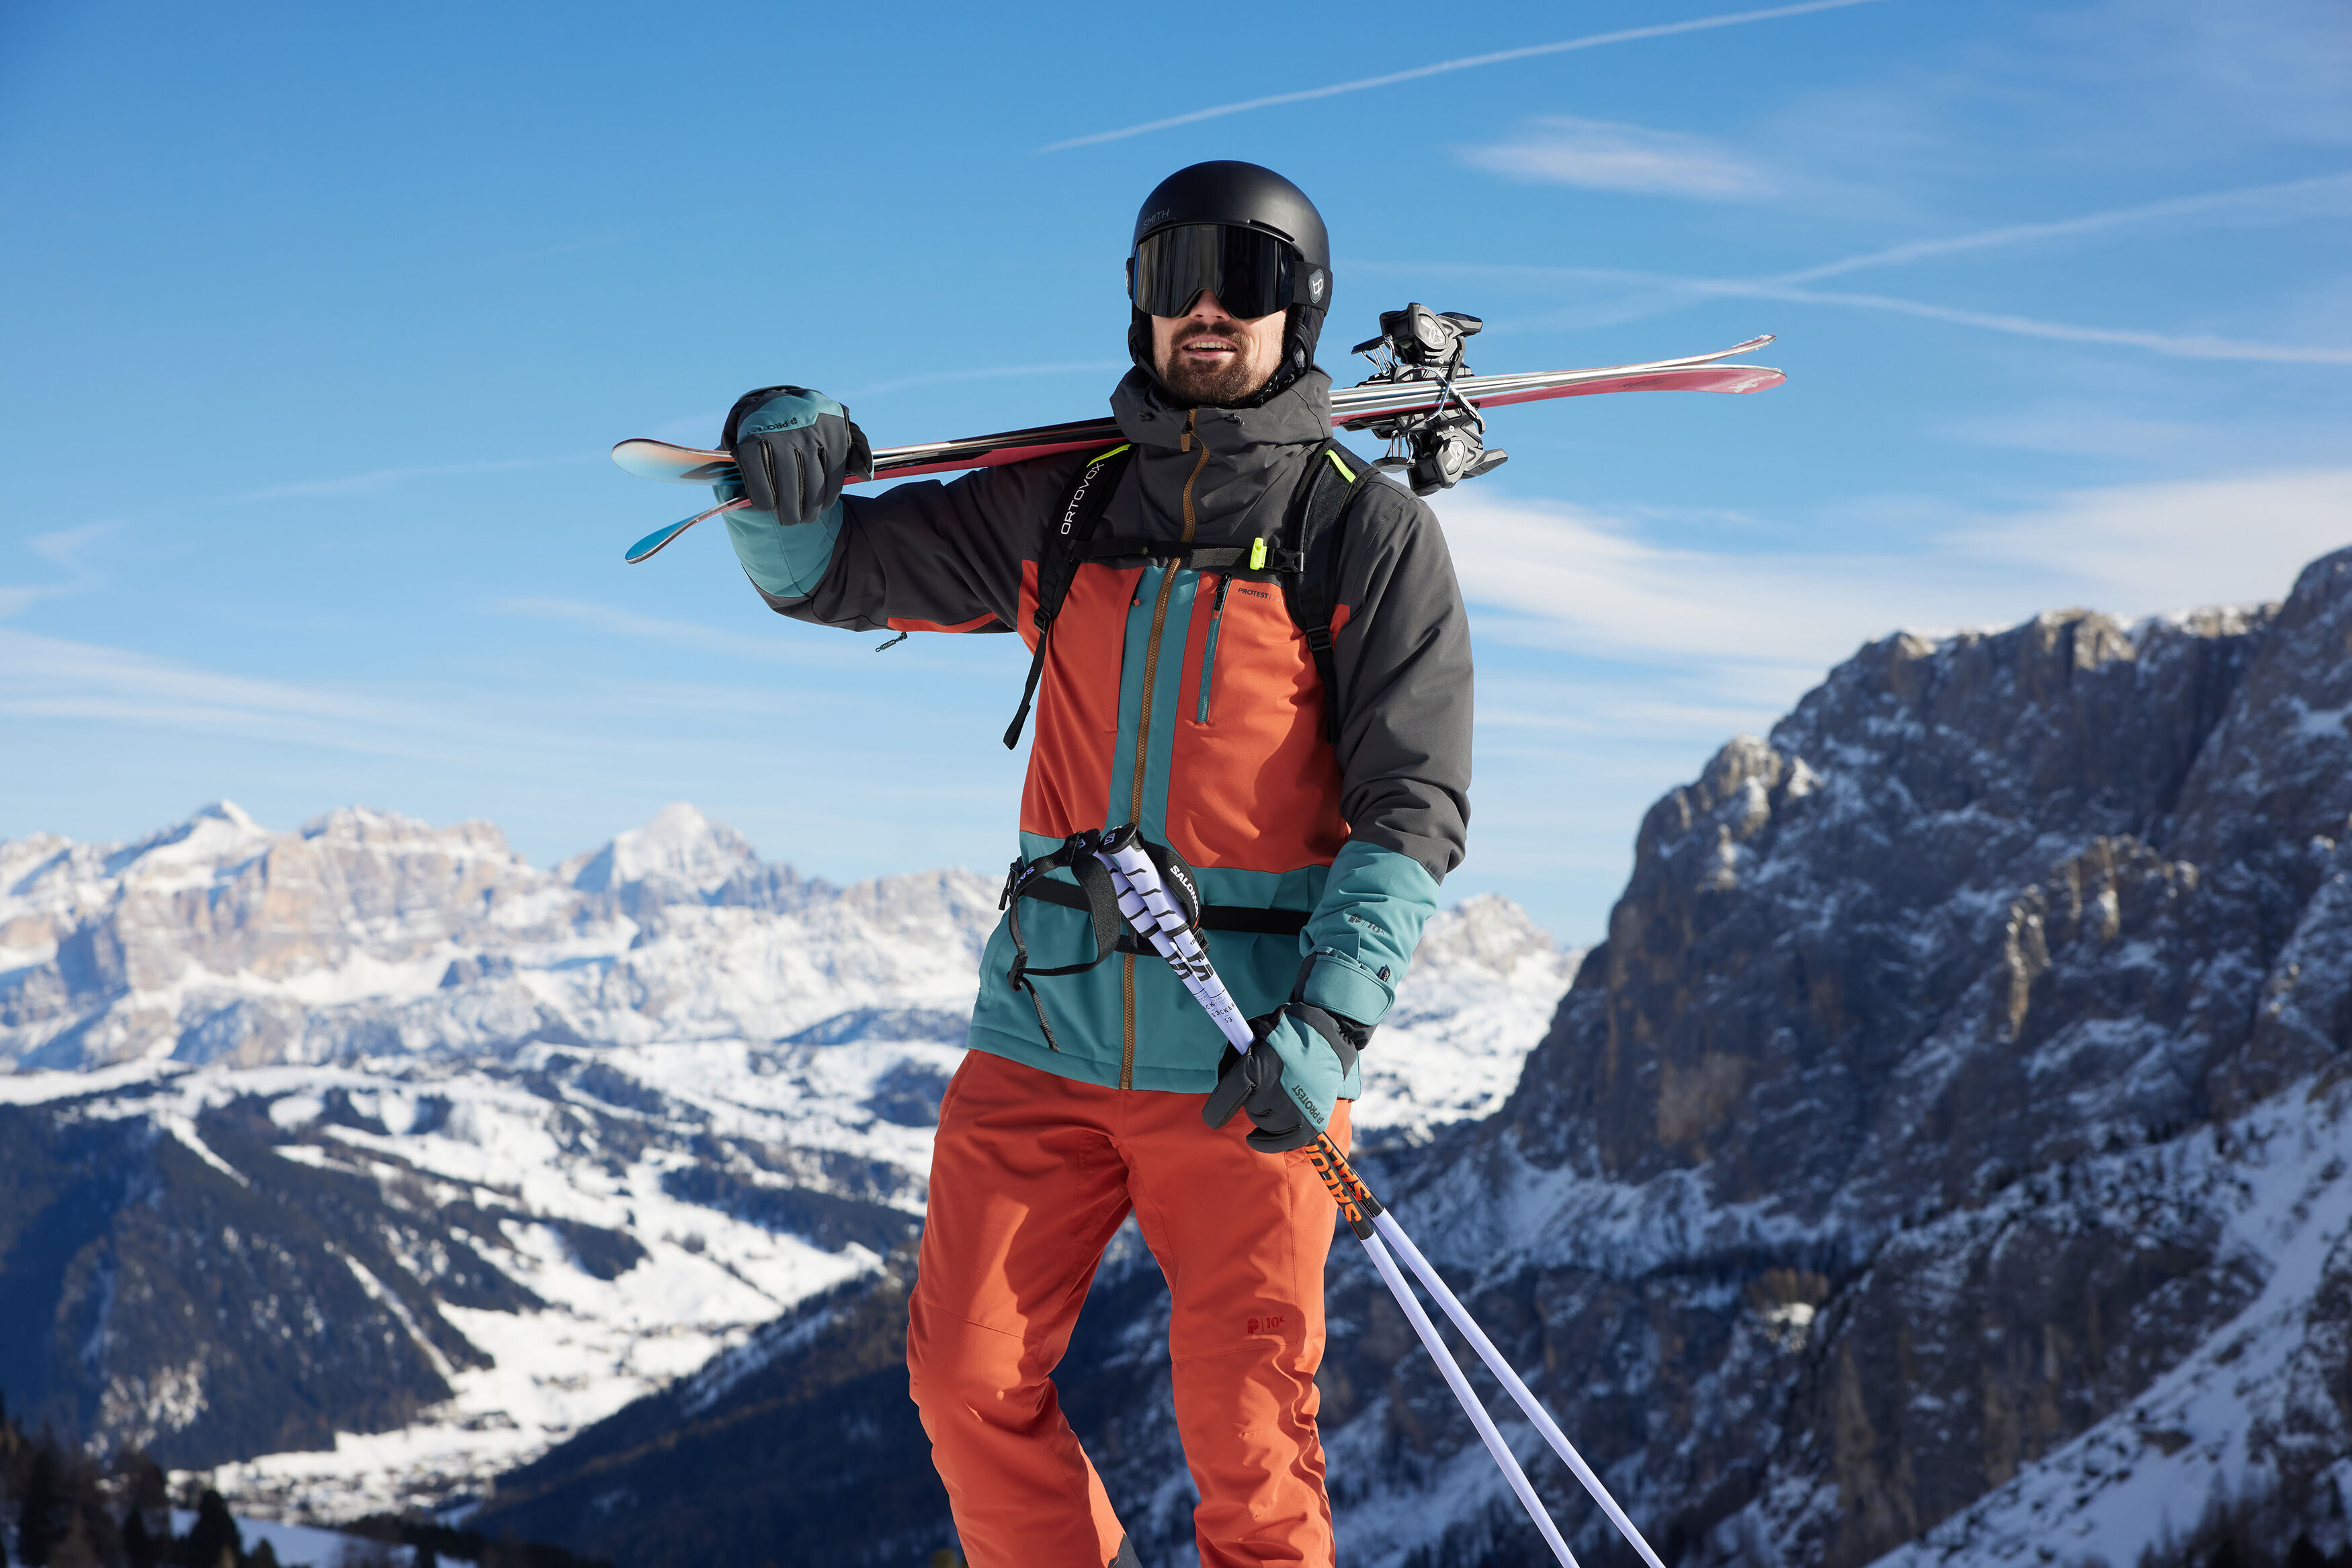 Bien choisir la tenue de ski idéale pour son enfant - France Montagnes -  Site Officiel des Stations de Ski en France